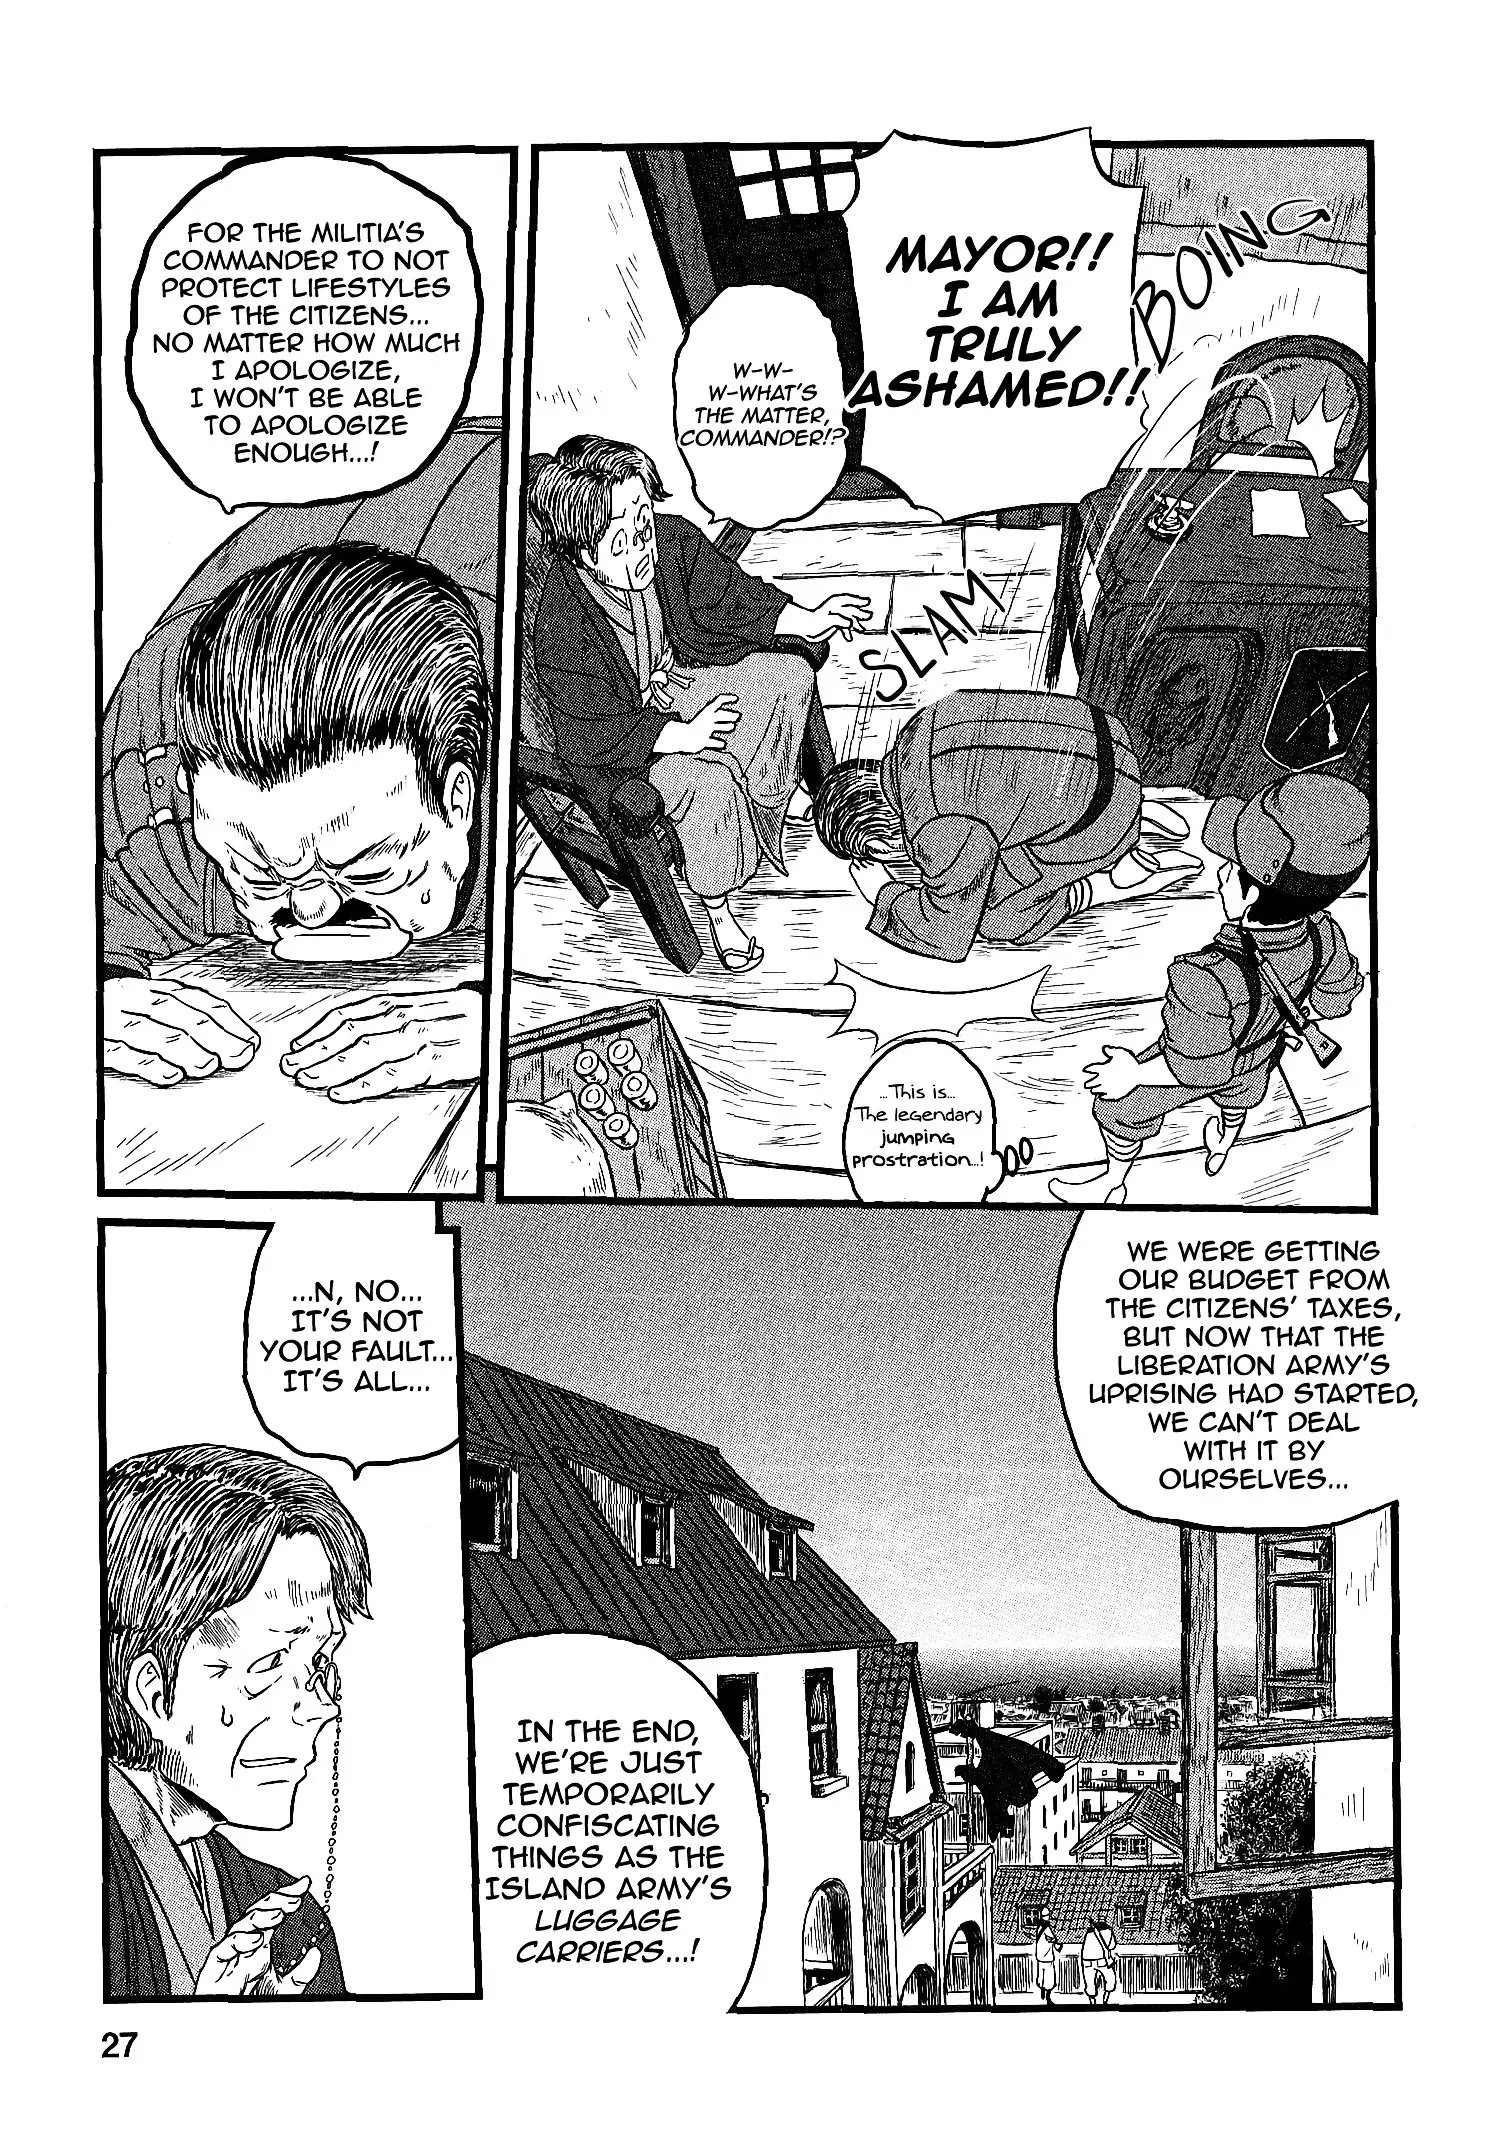 Groundless - Sekigan No Sogekihei - 14 page 28-55a55e92